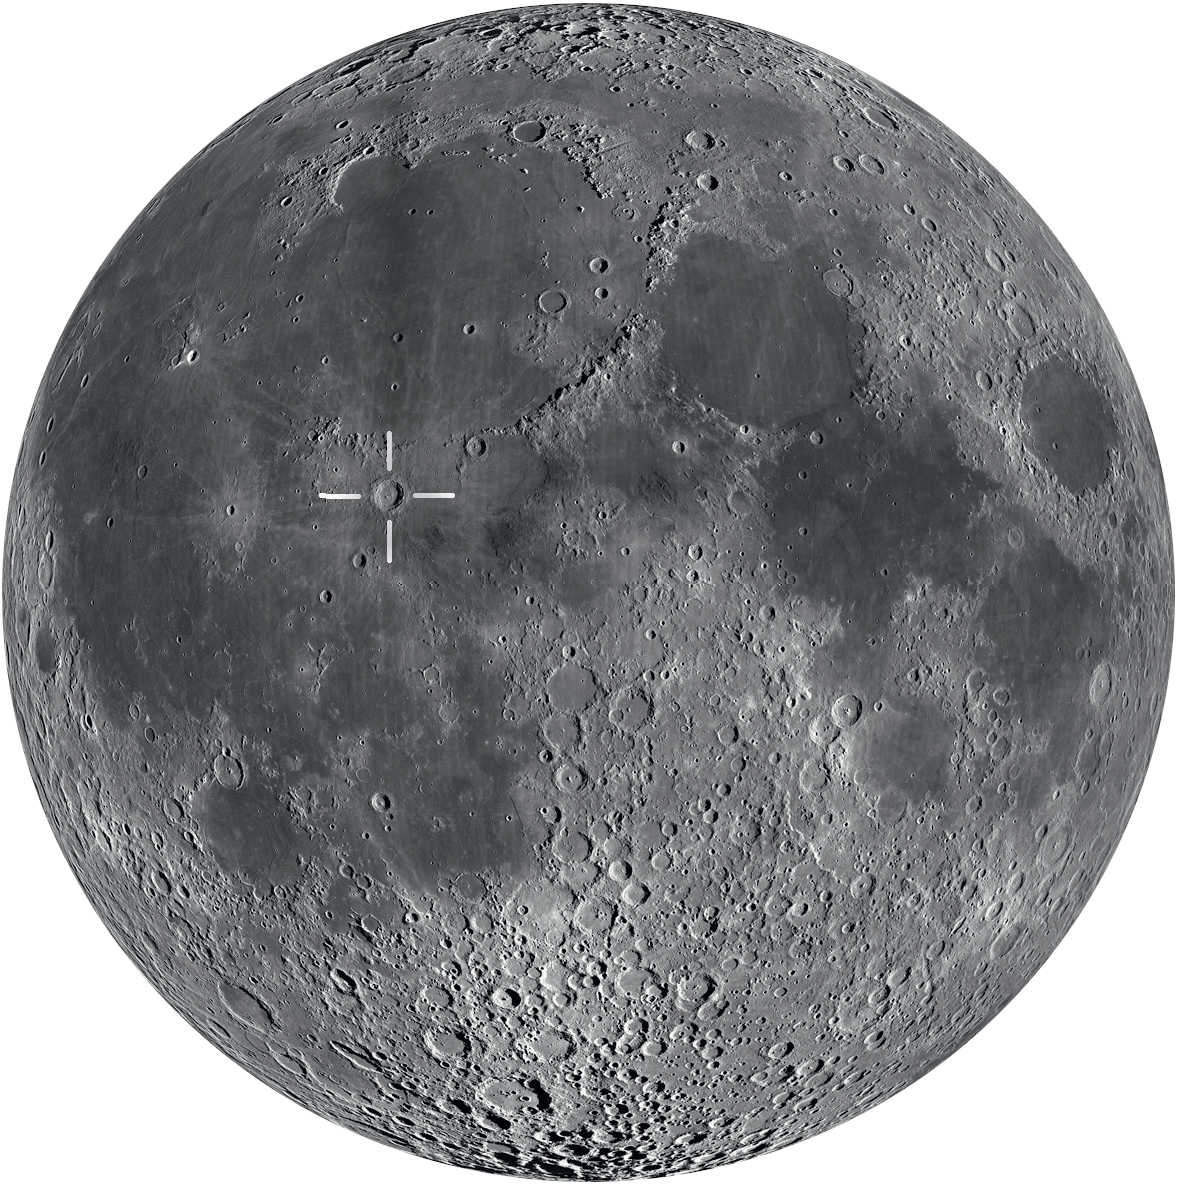 Copernicus está cerca del ecuador lunar. El momento óptimo para observarlo es entre el primer cuarto hasta poco antes de la Luna llena.